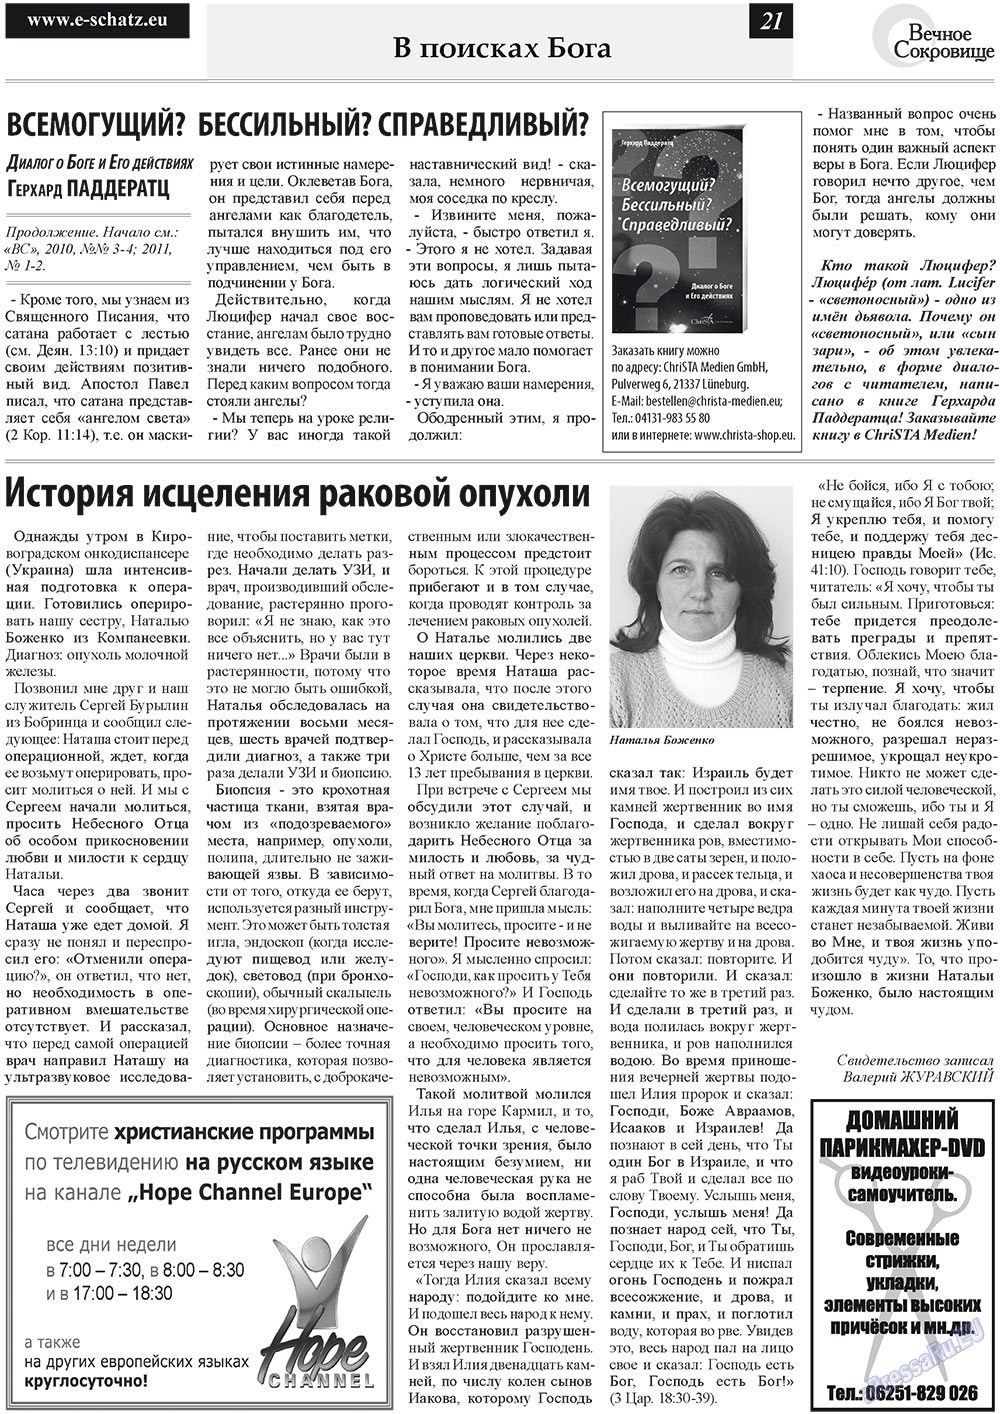 Вечное сокровище (газета). 2011 год, номер 3, стр. 21